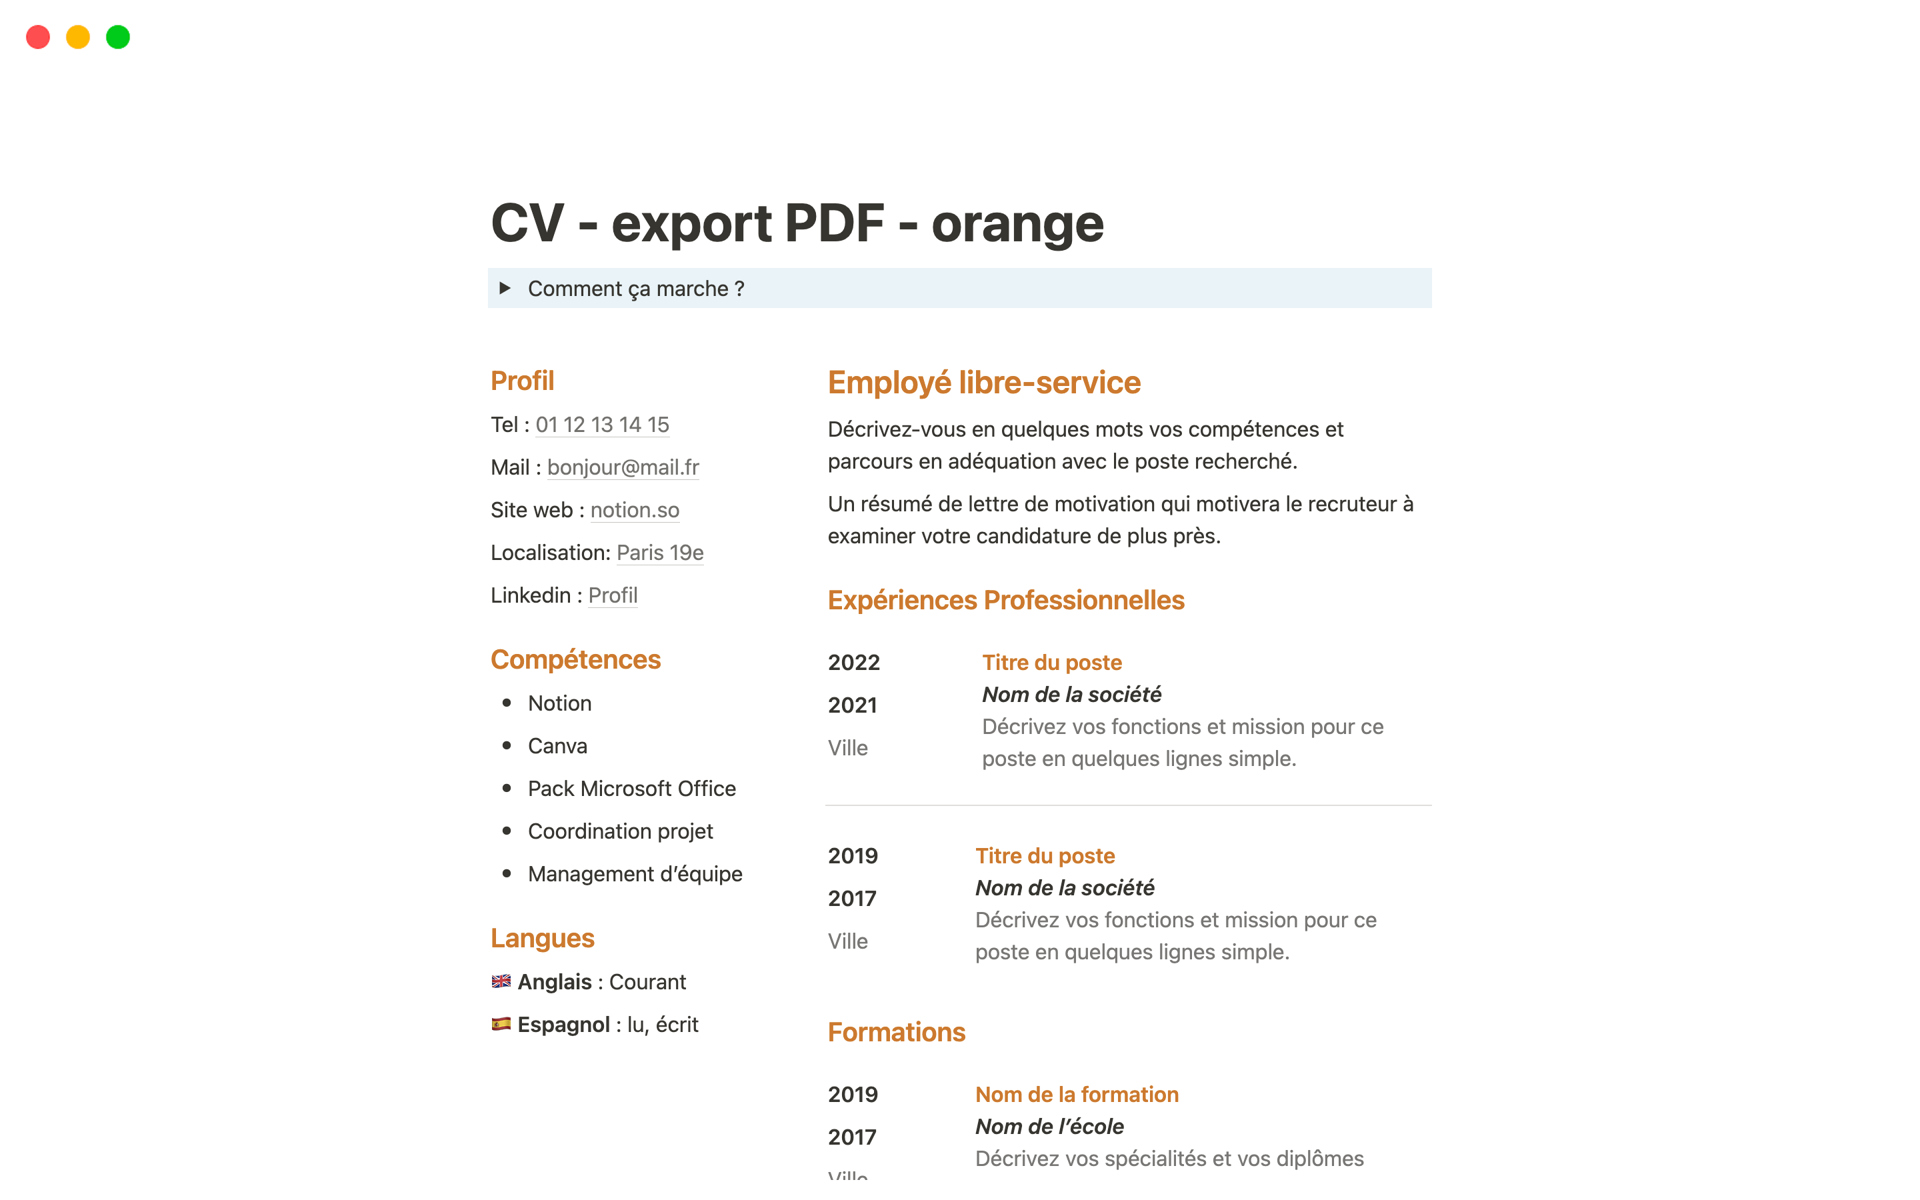 Uma prévia do modelo para CV simple pour export PDF - orange